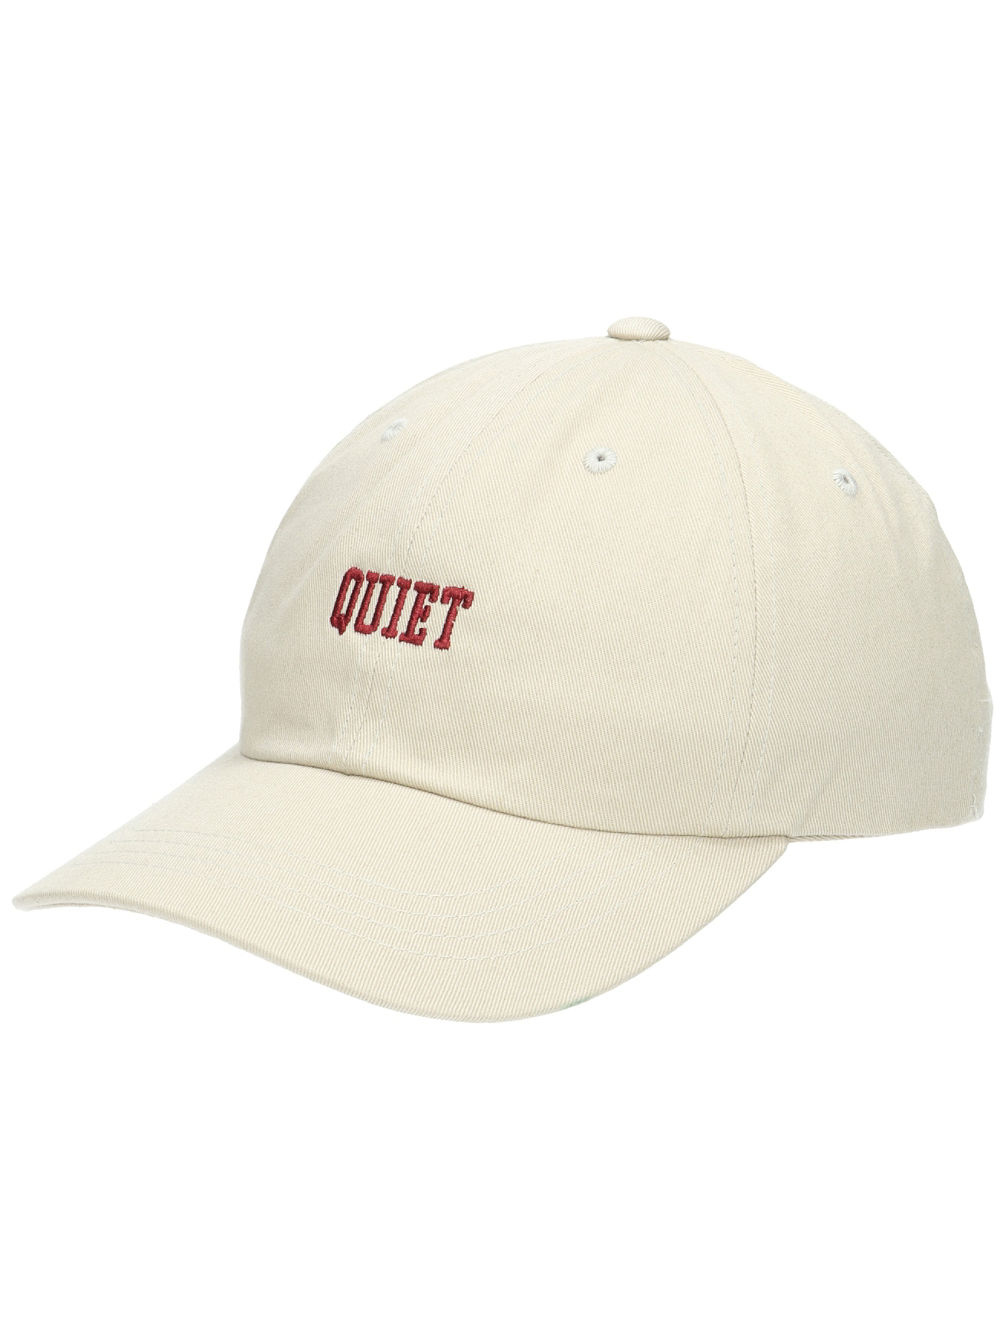 Quiet Dad Hut Cap